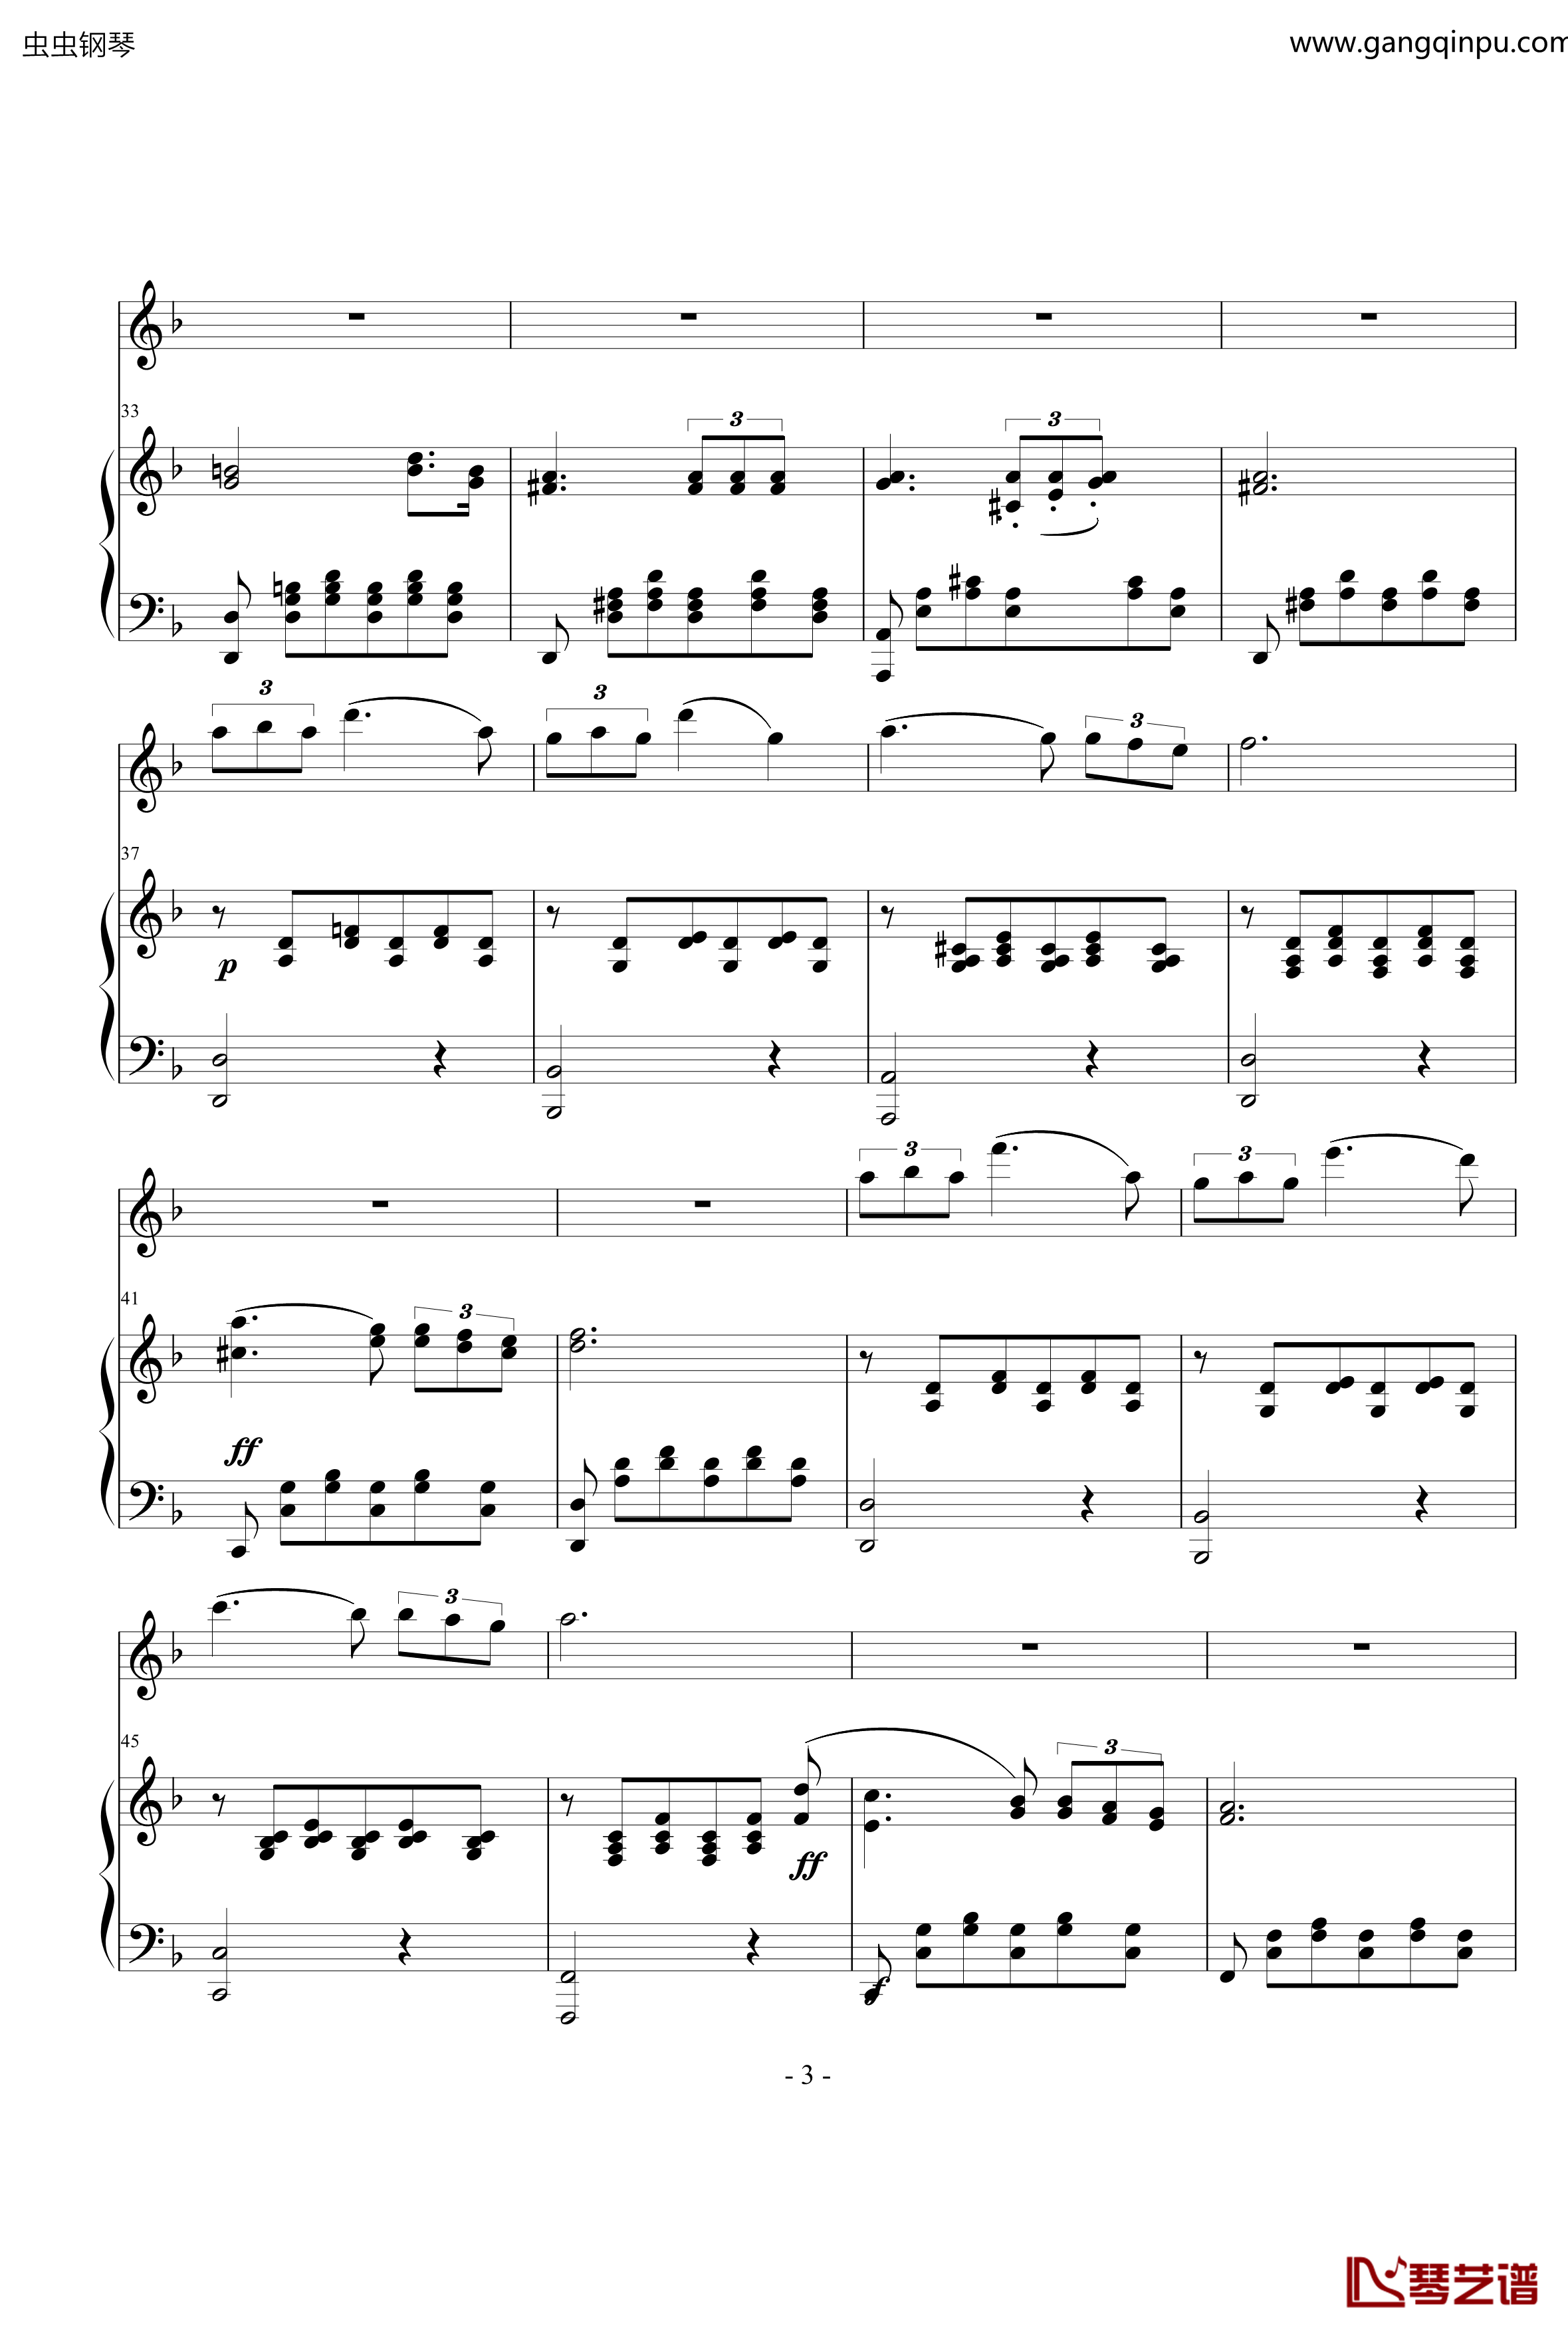 小夜曲钢琴谱-ove 格式长笛笛钢琴伴奏-舒伯特